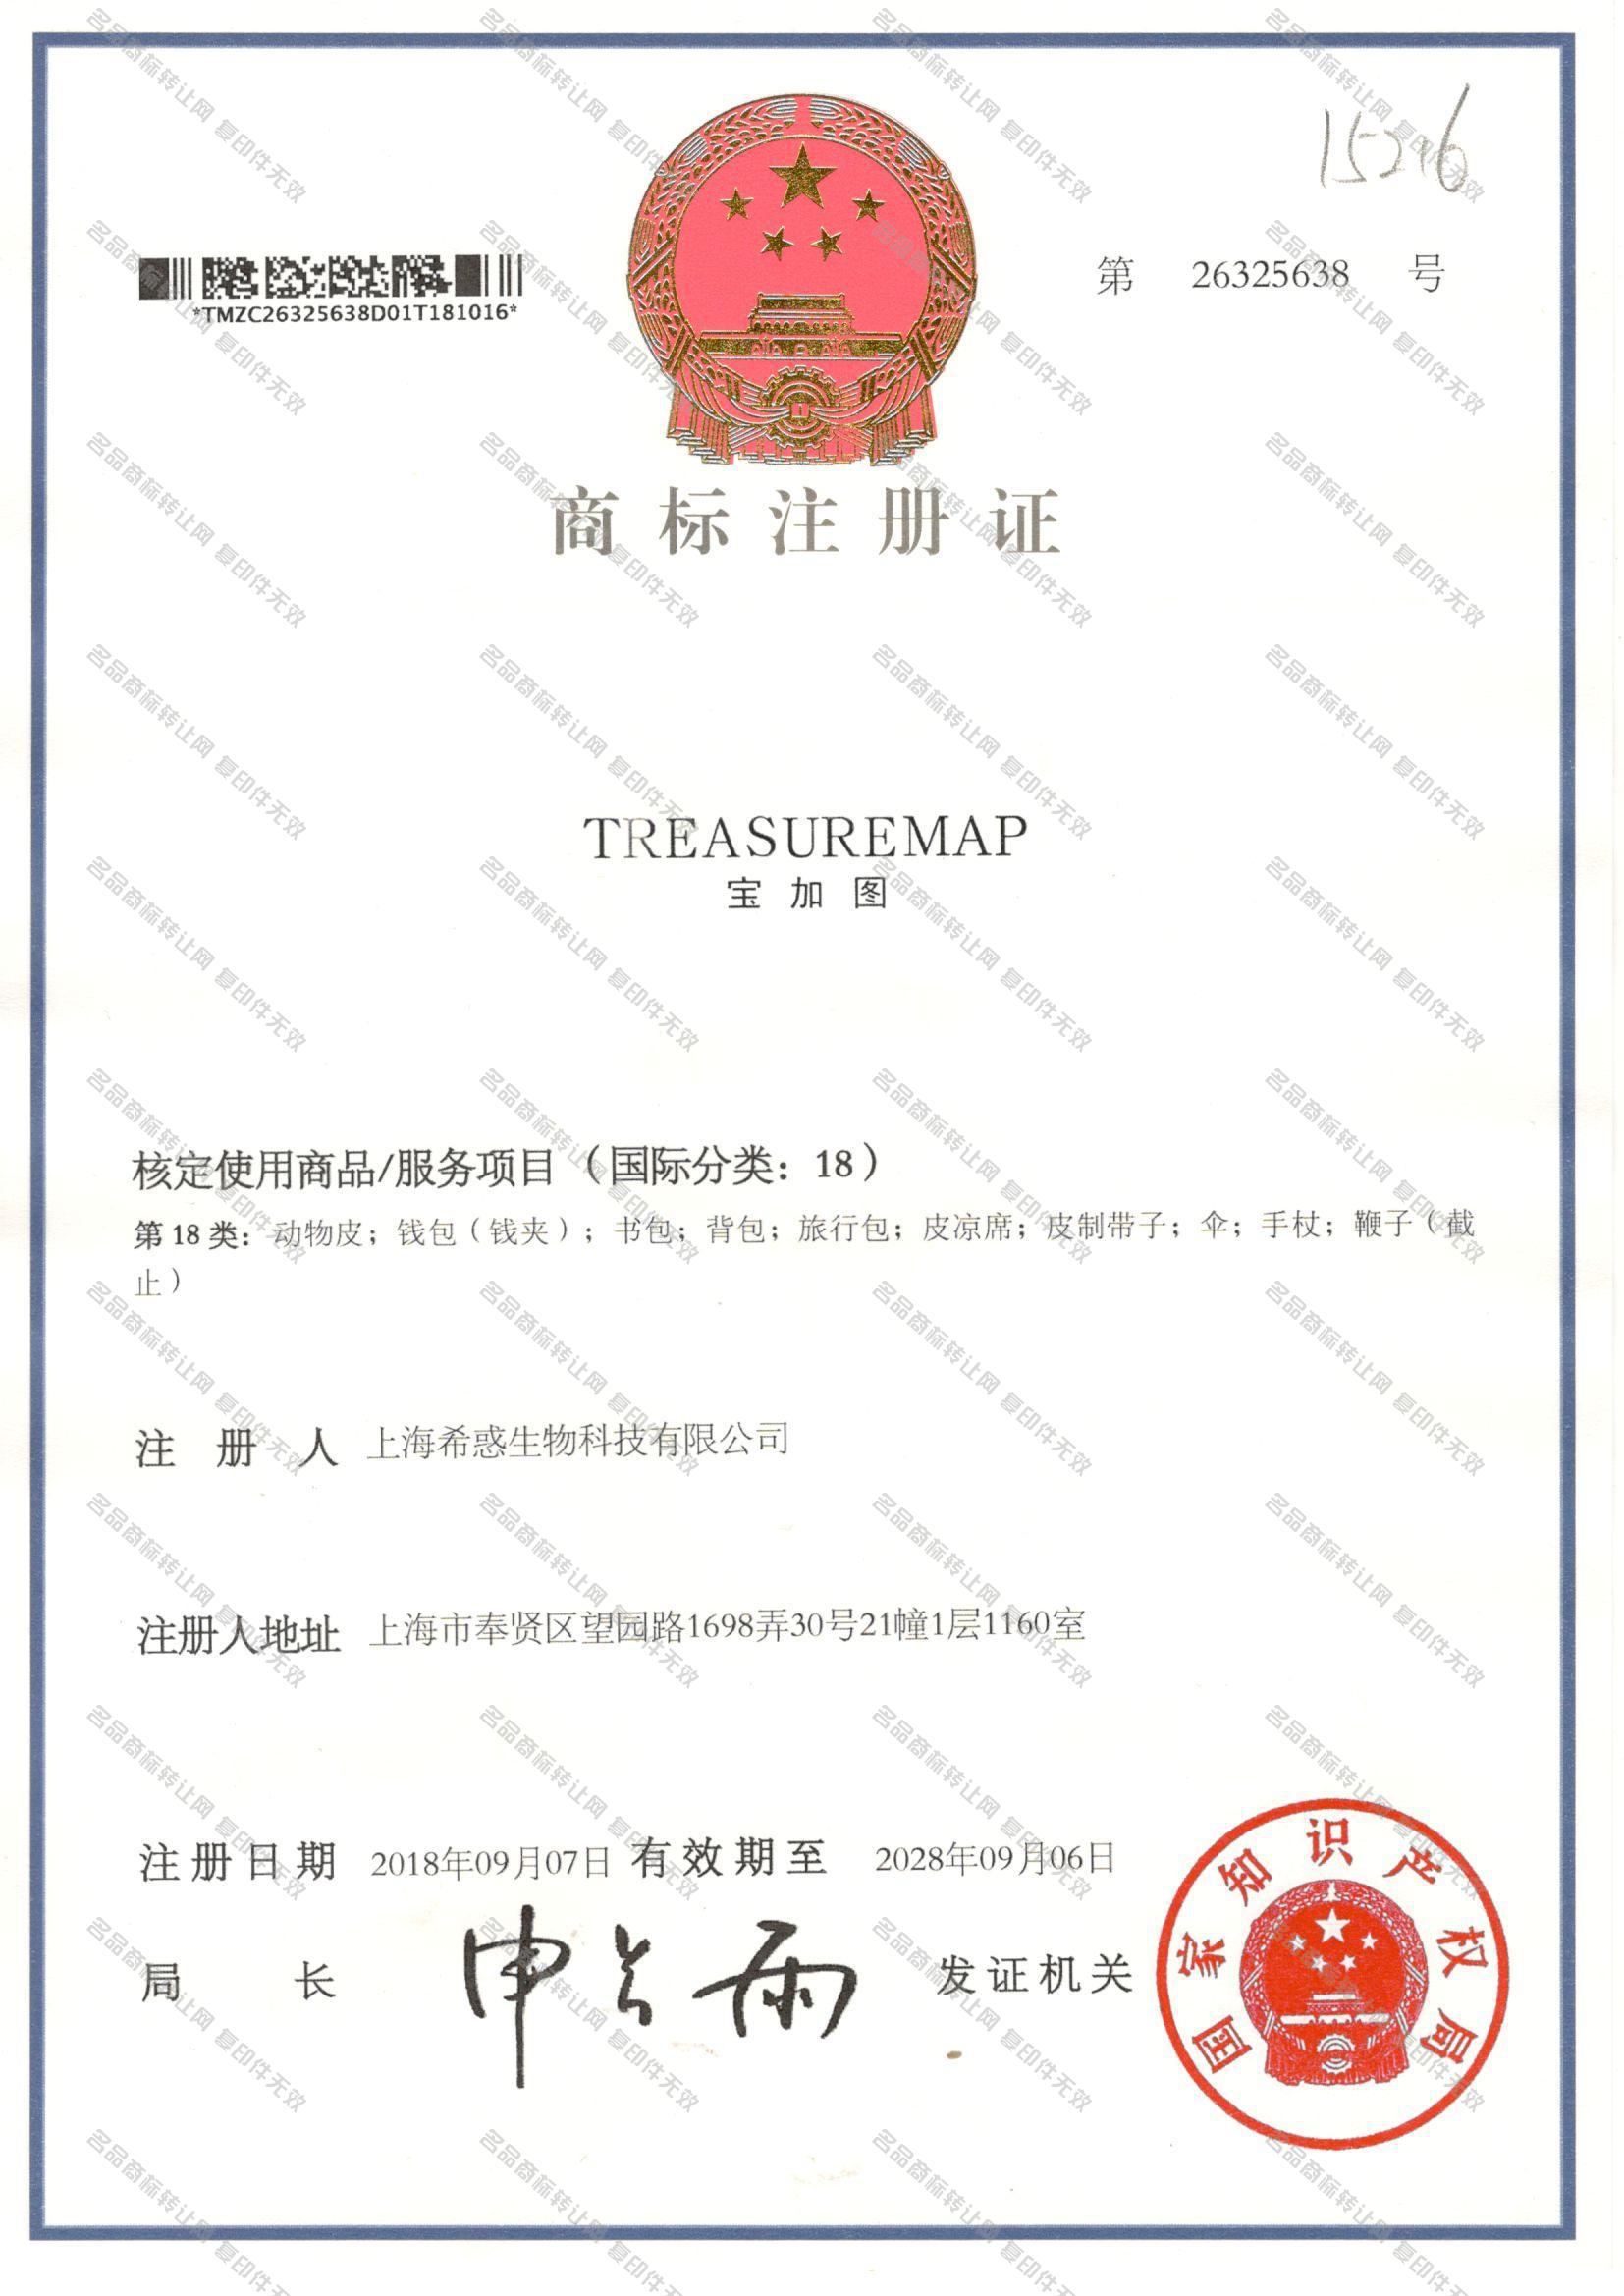 宝加图 TREASUREMAP注册证